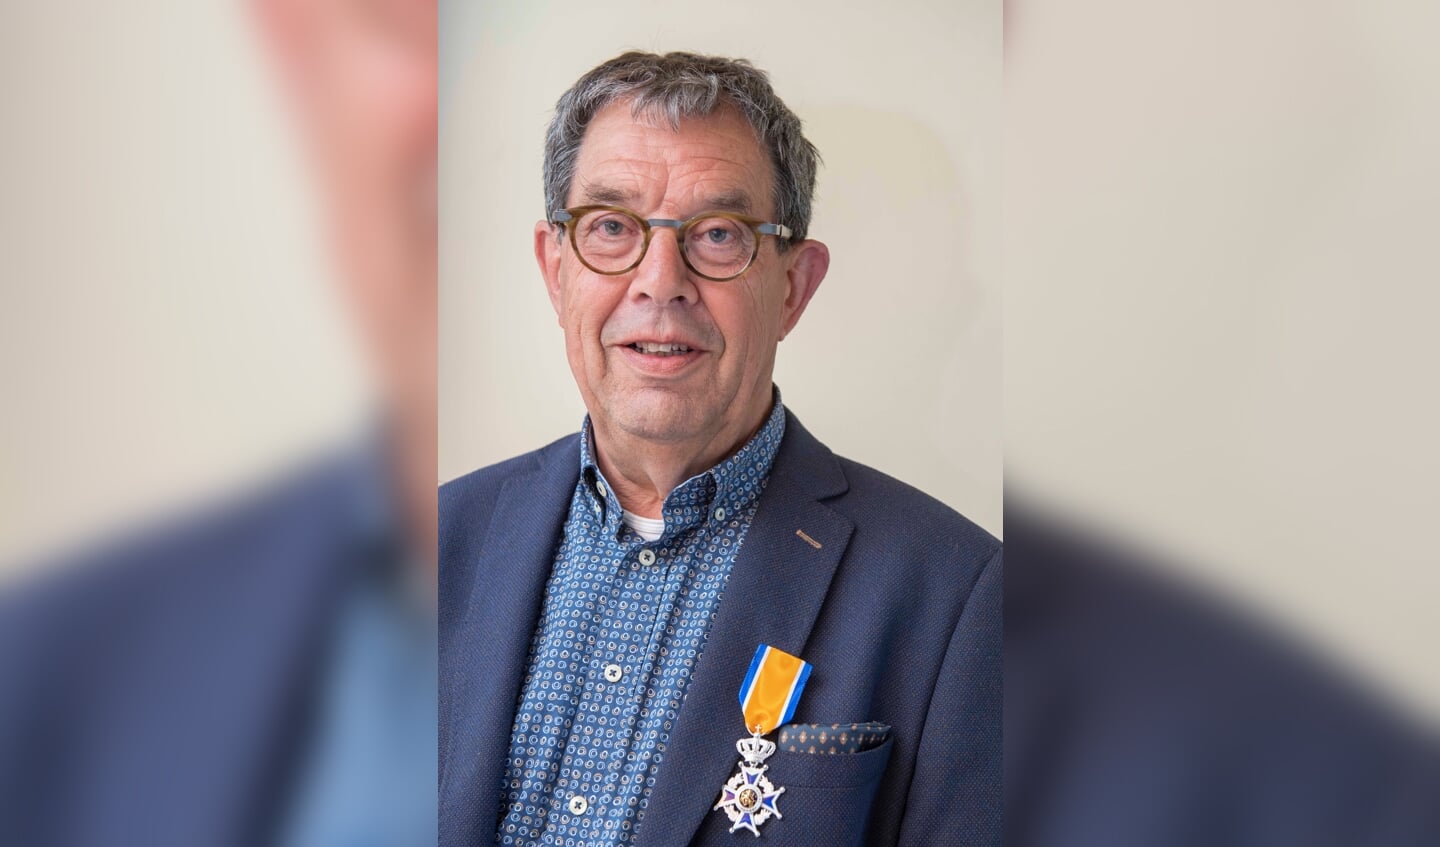 Johan van Oosterhout, Ridder in de Orde van Oranje-Nassau.